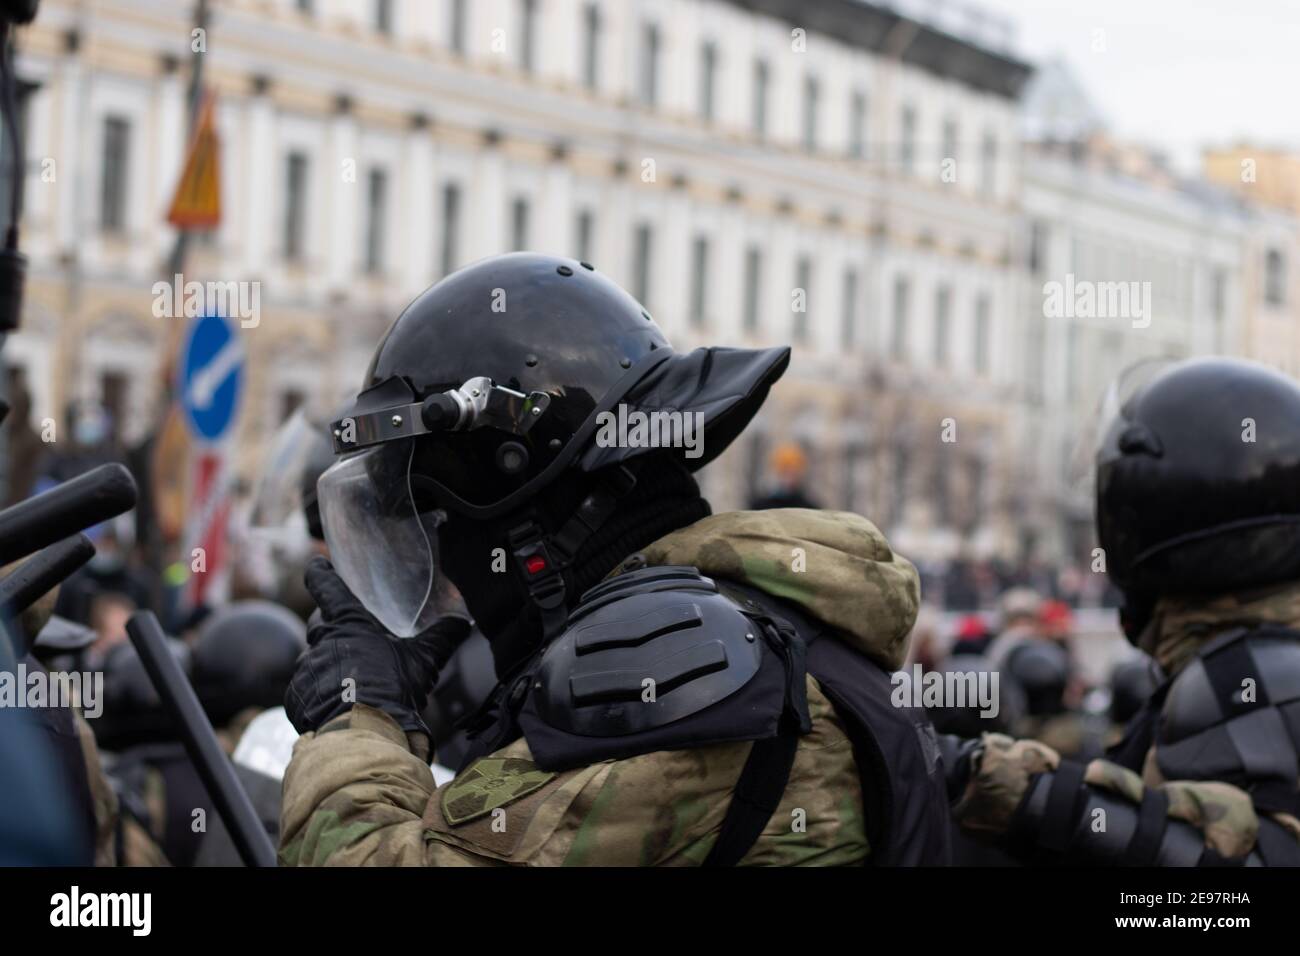 Saint-Pétersbourg, Russie - 31 janvier 2021 : la police anti-émeute est blindée dans la rue, éditoriale illustrative. Banque D'Images